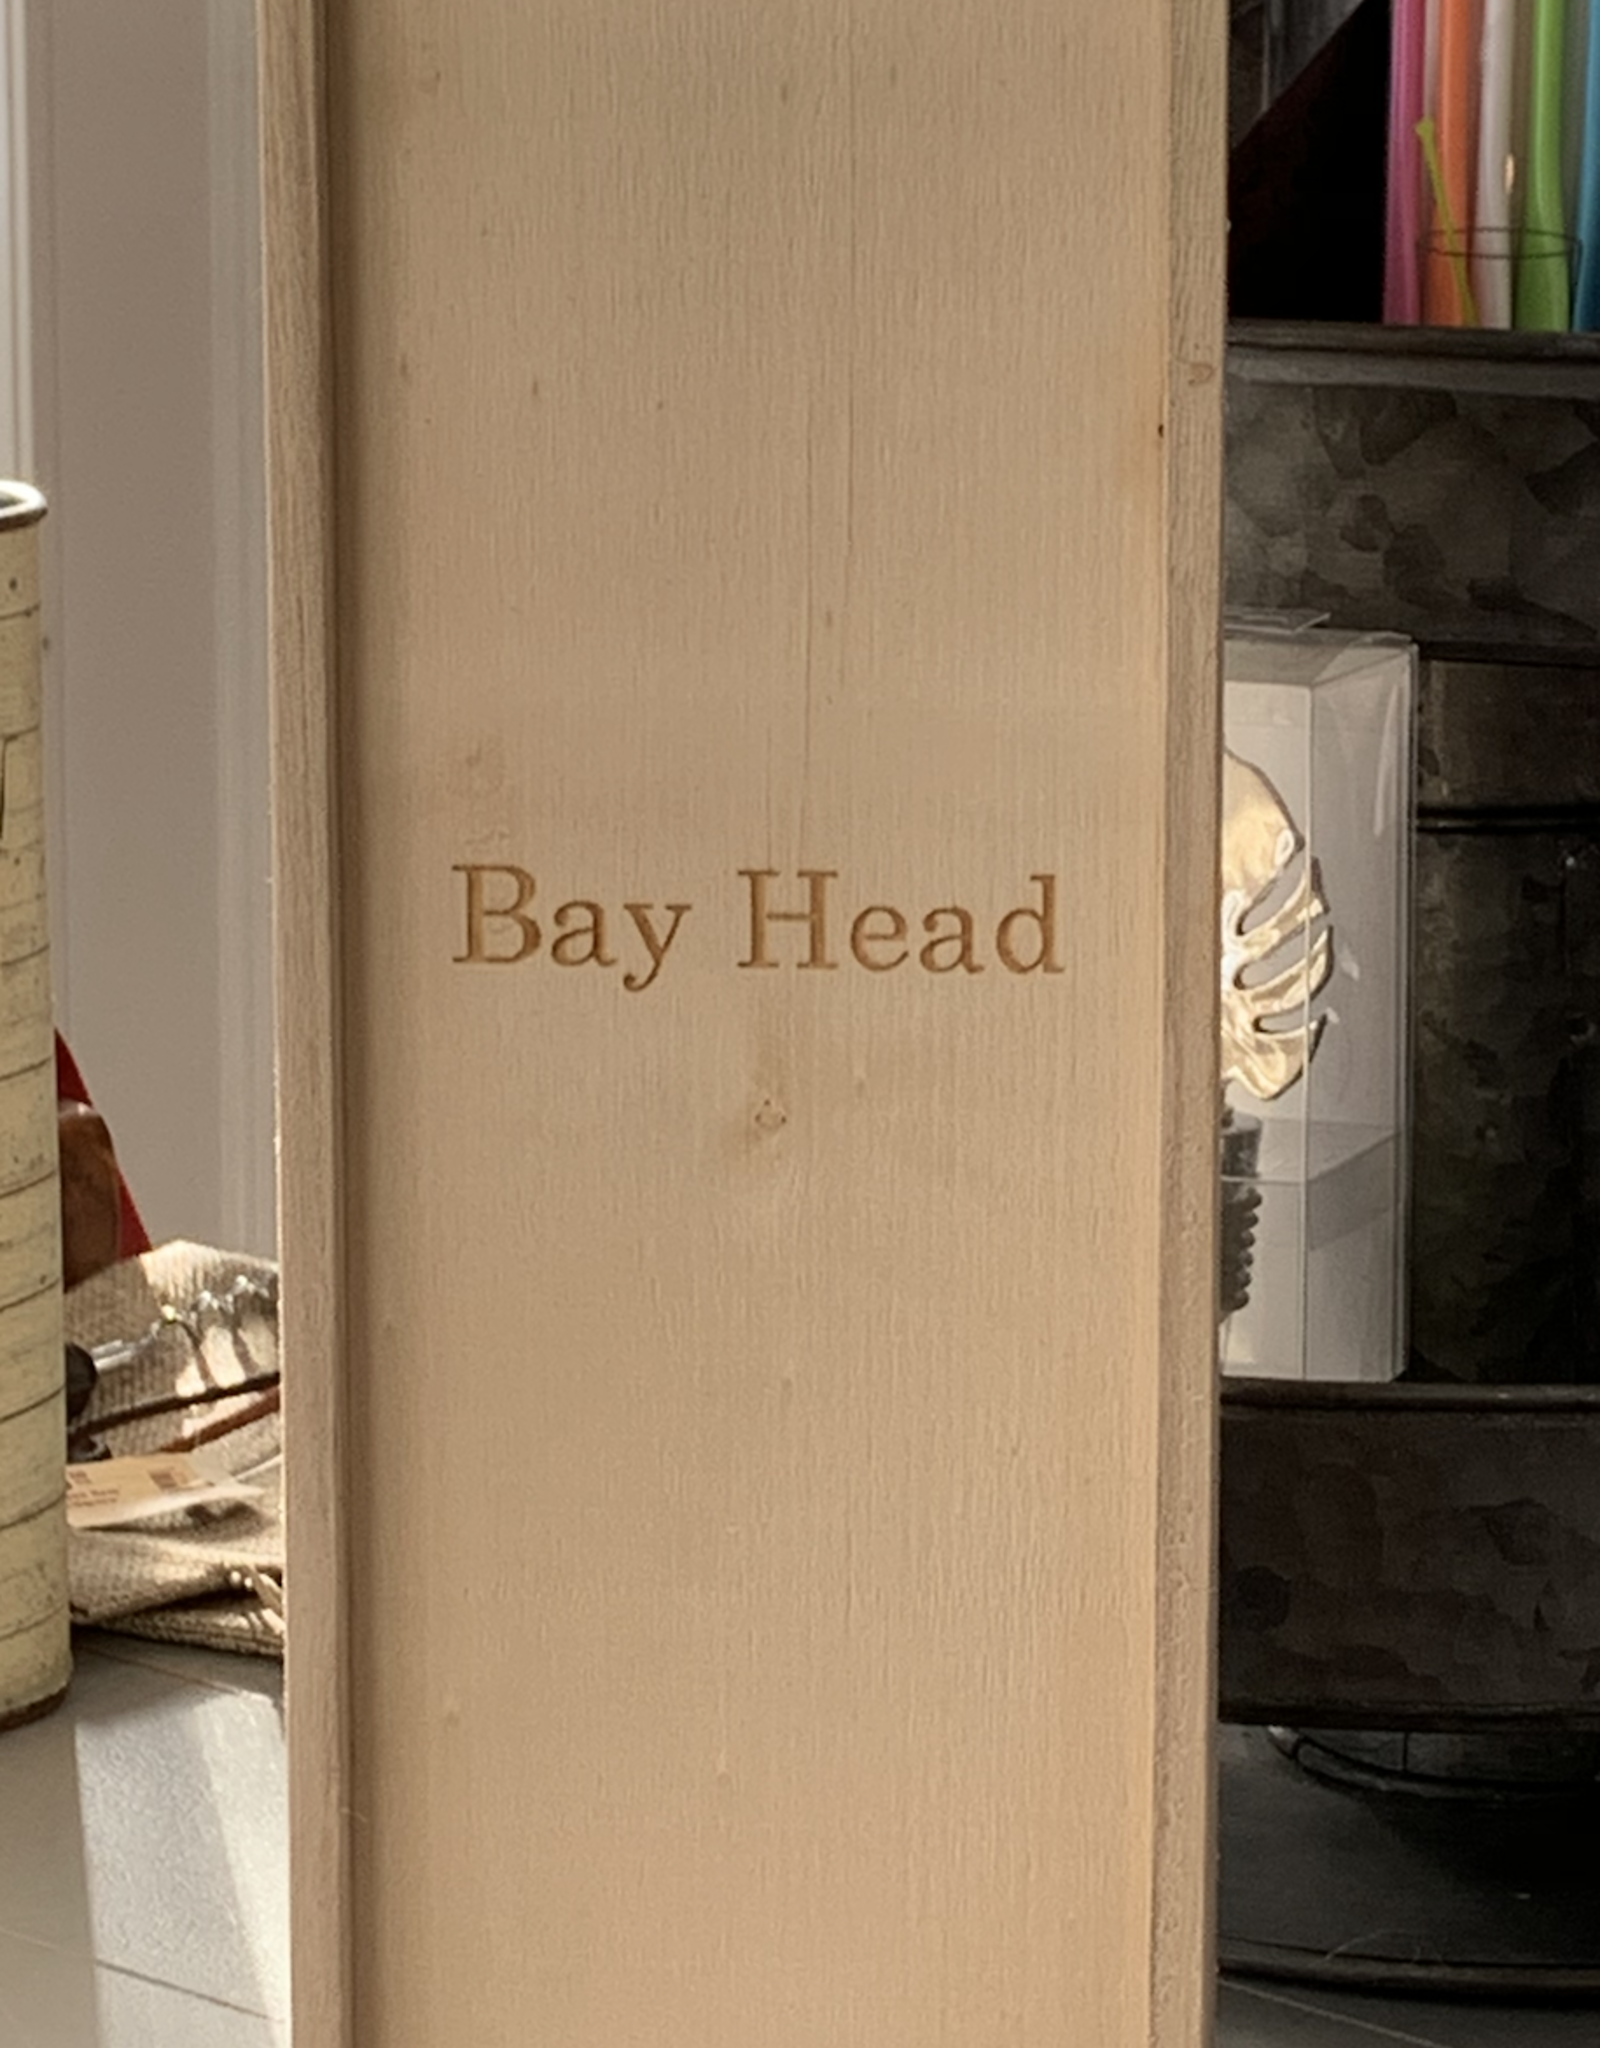 Bay Head 1-Bottle Wine Box